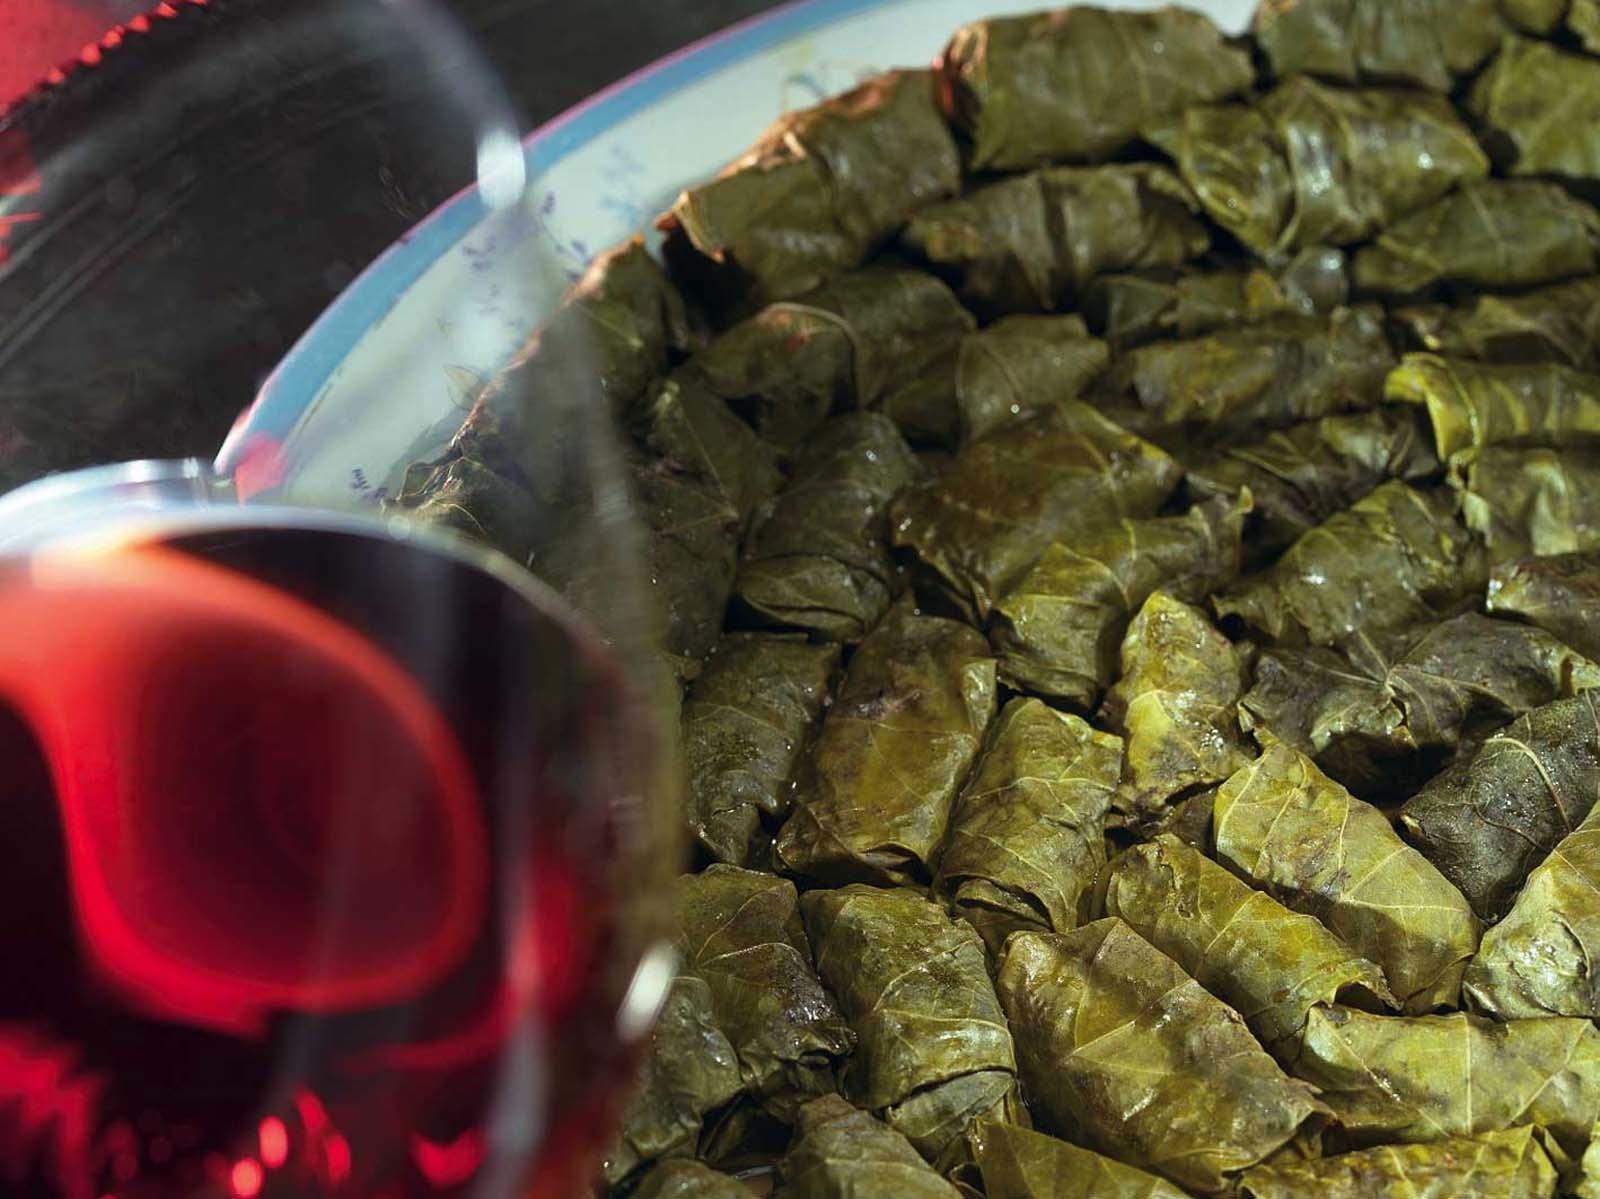 Рецепт голубцов из виноградных листьев с фото по шагам